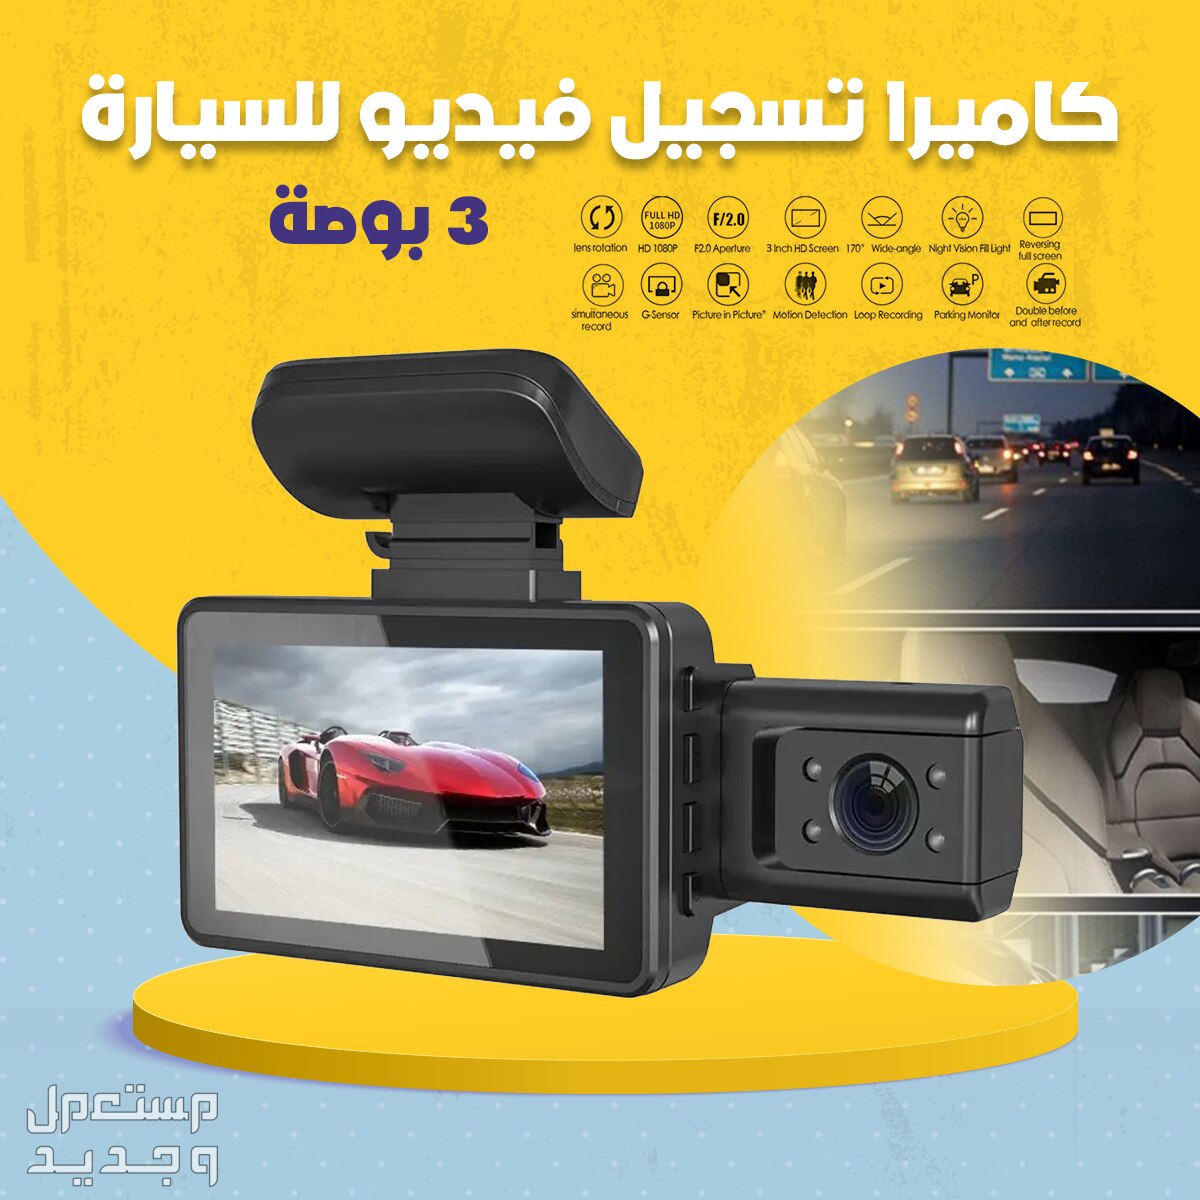 كاميرا تسجيل فيديو حجم شاشة 3 بوصة للسيارة تسجيل أمامي وداخلي داخل السيارة متوفرة للطلب لكل المدن والتوصيل والشحن مجانا